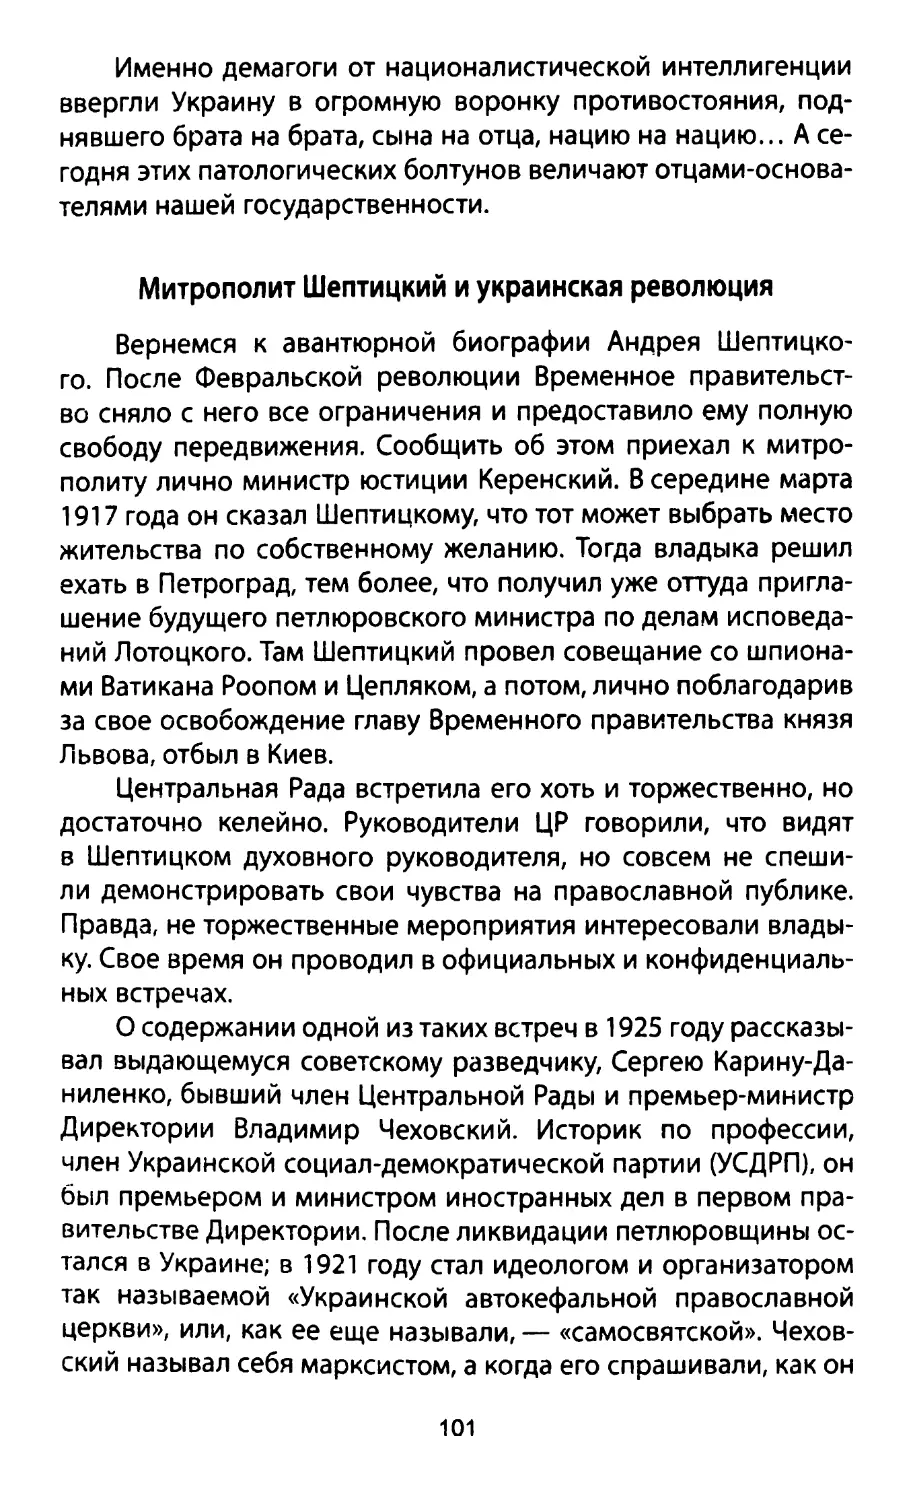 Митрополит Шептицкий и украинская революция